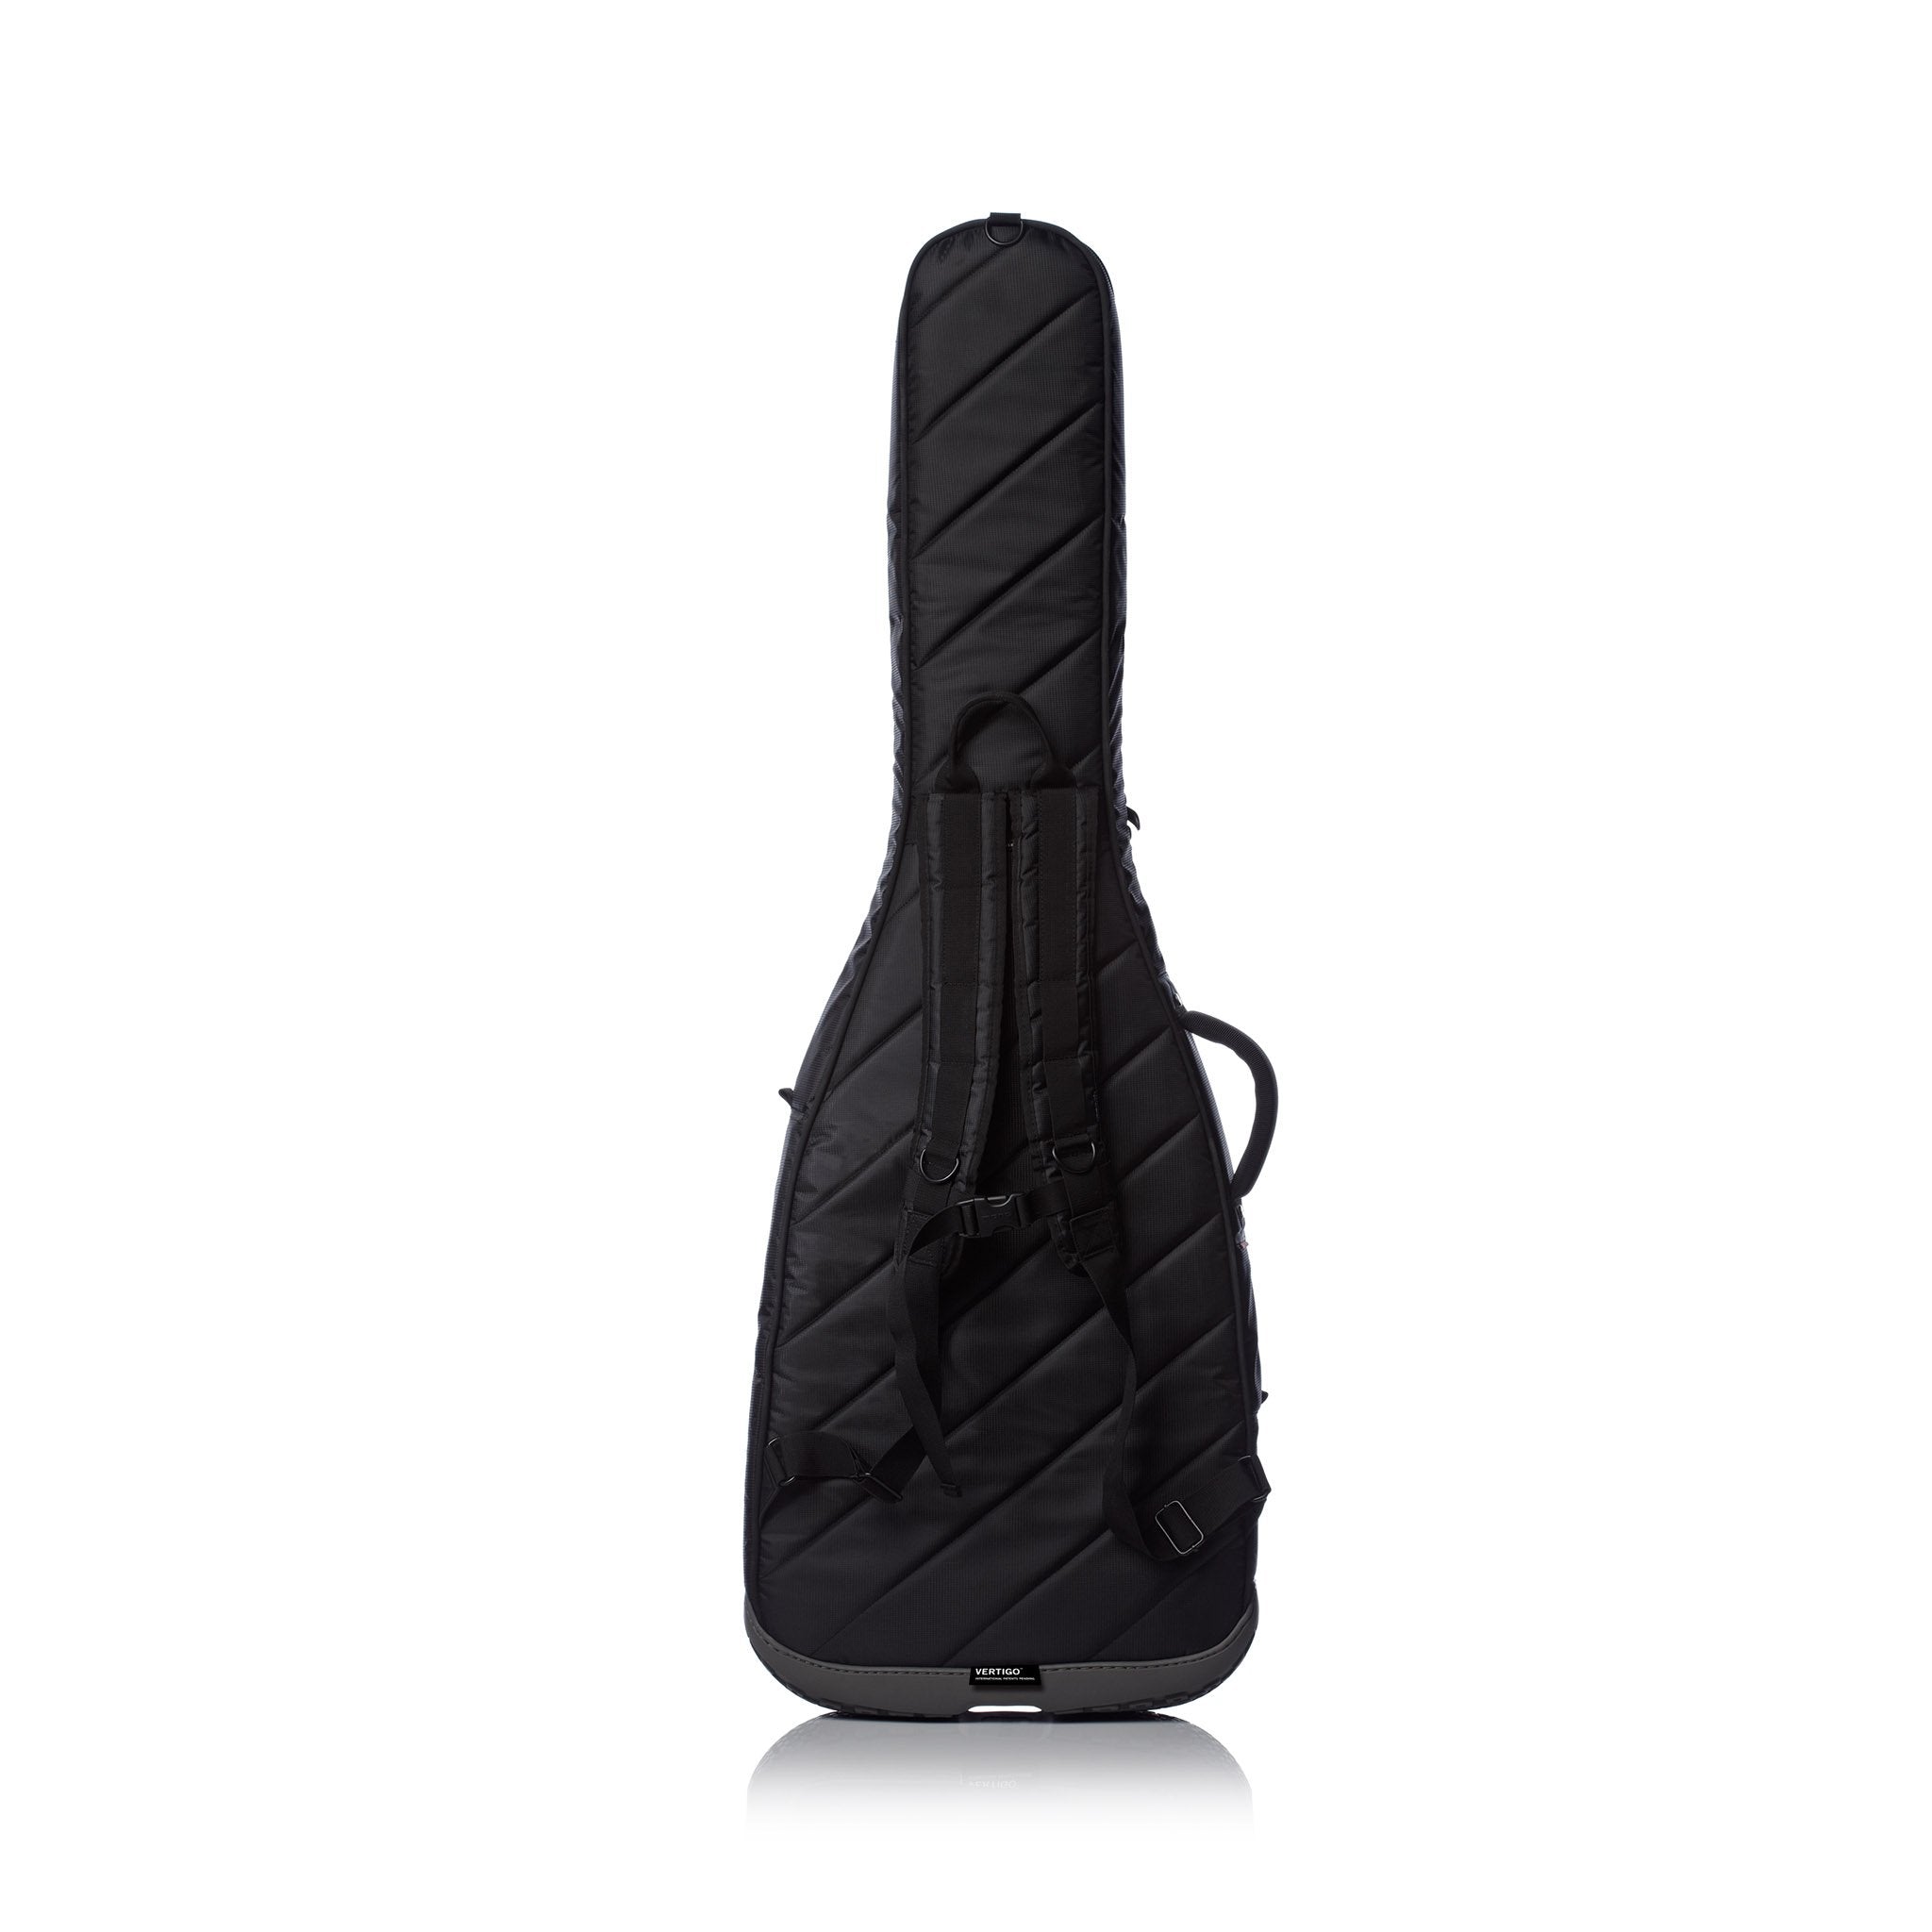 MONO M80 Vertigo Bass Guitar Case, Black